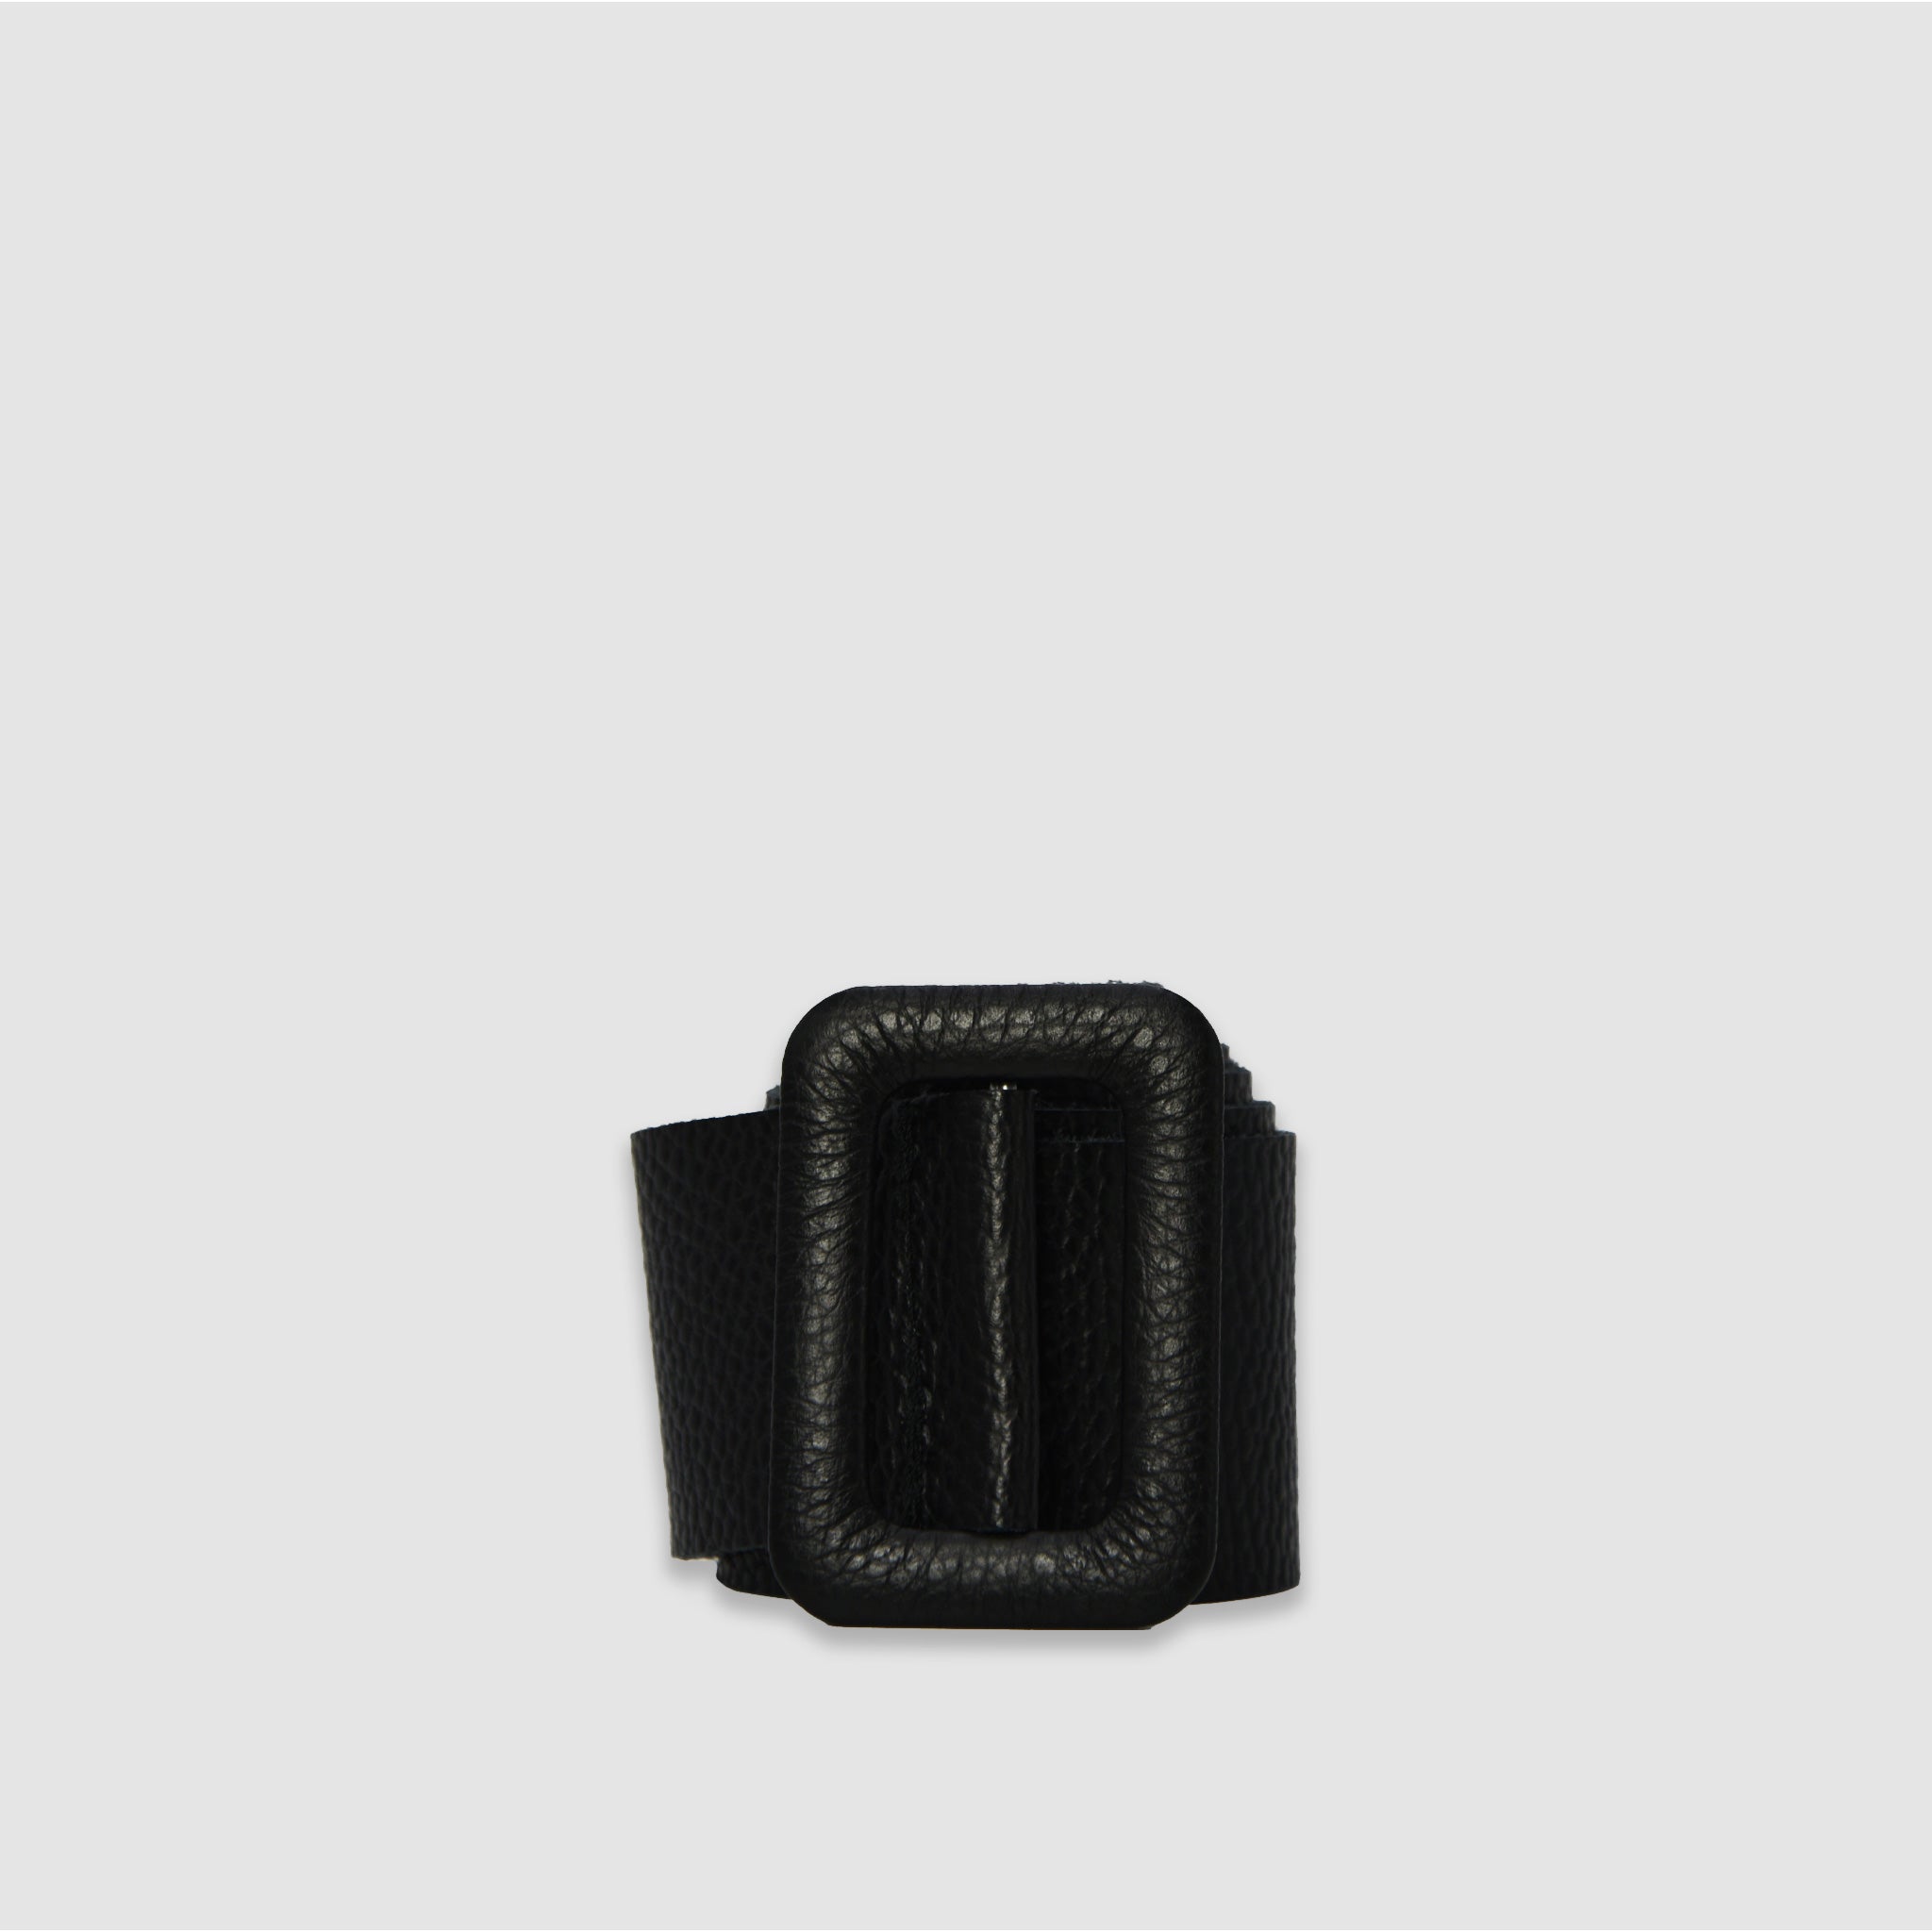 SQUARE - Cintura in pelle - NERO - MIDMAIND™ | BRAND